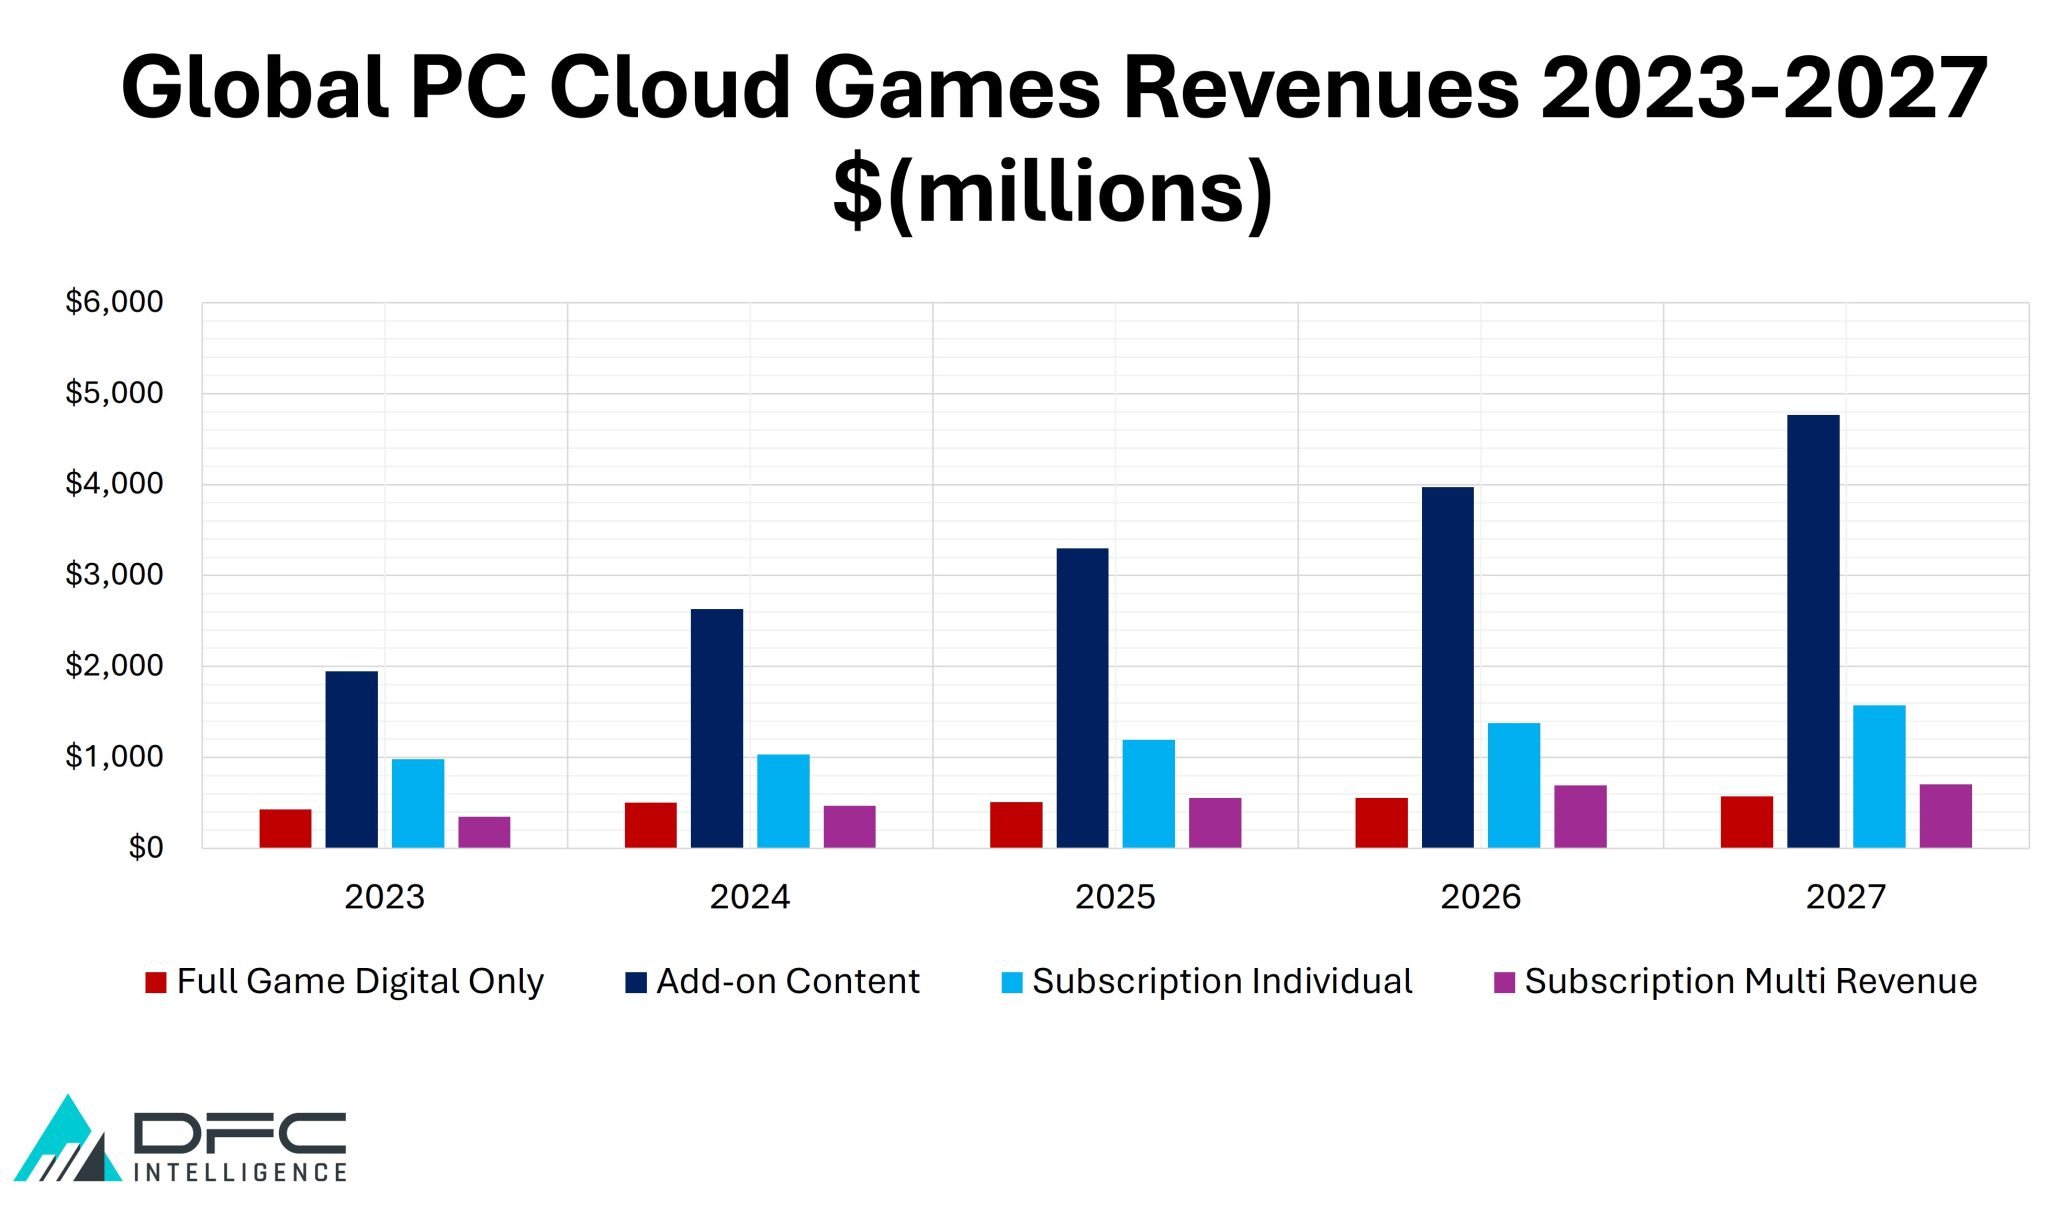 PC Cloud Games Revenues